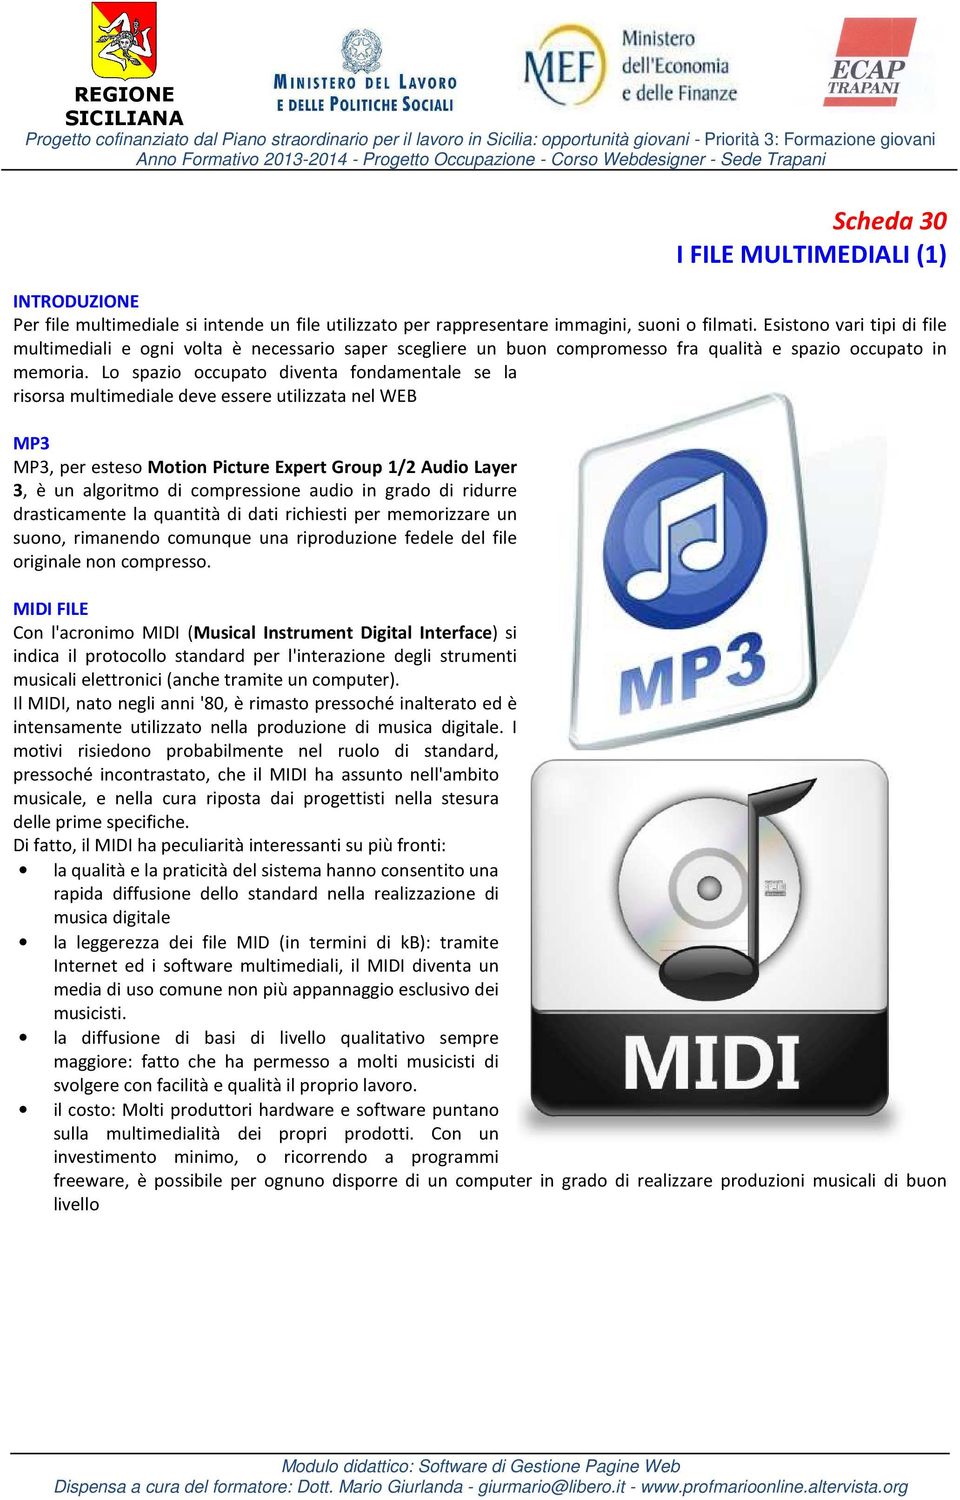 Lo spazio occupato diventa fondamentale se la risorsa multimediale deve essere utilizzata nel WEB MP3 MP3, per esteso Motion Picture Expert Group 1/2 Audio Layer 3, è un algoritmo di compressione